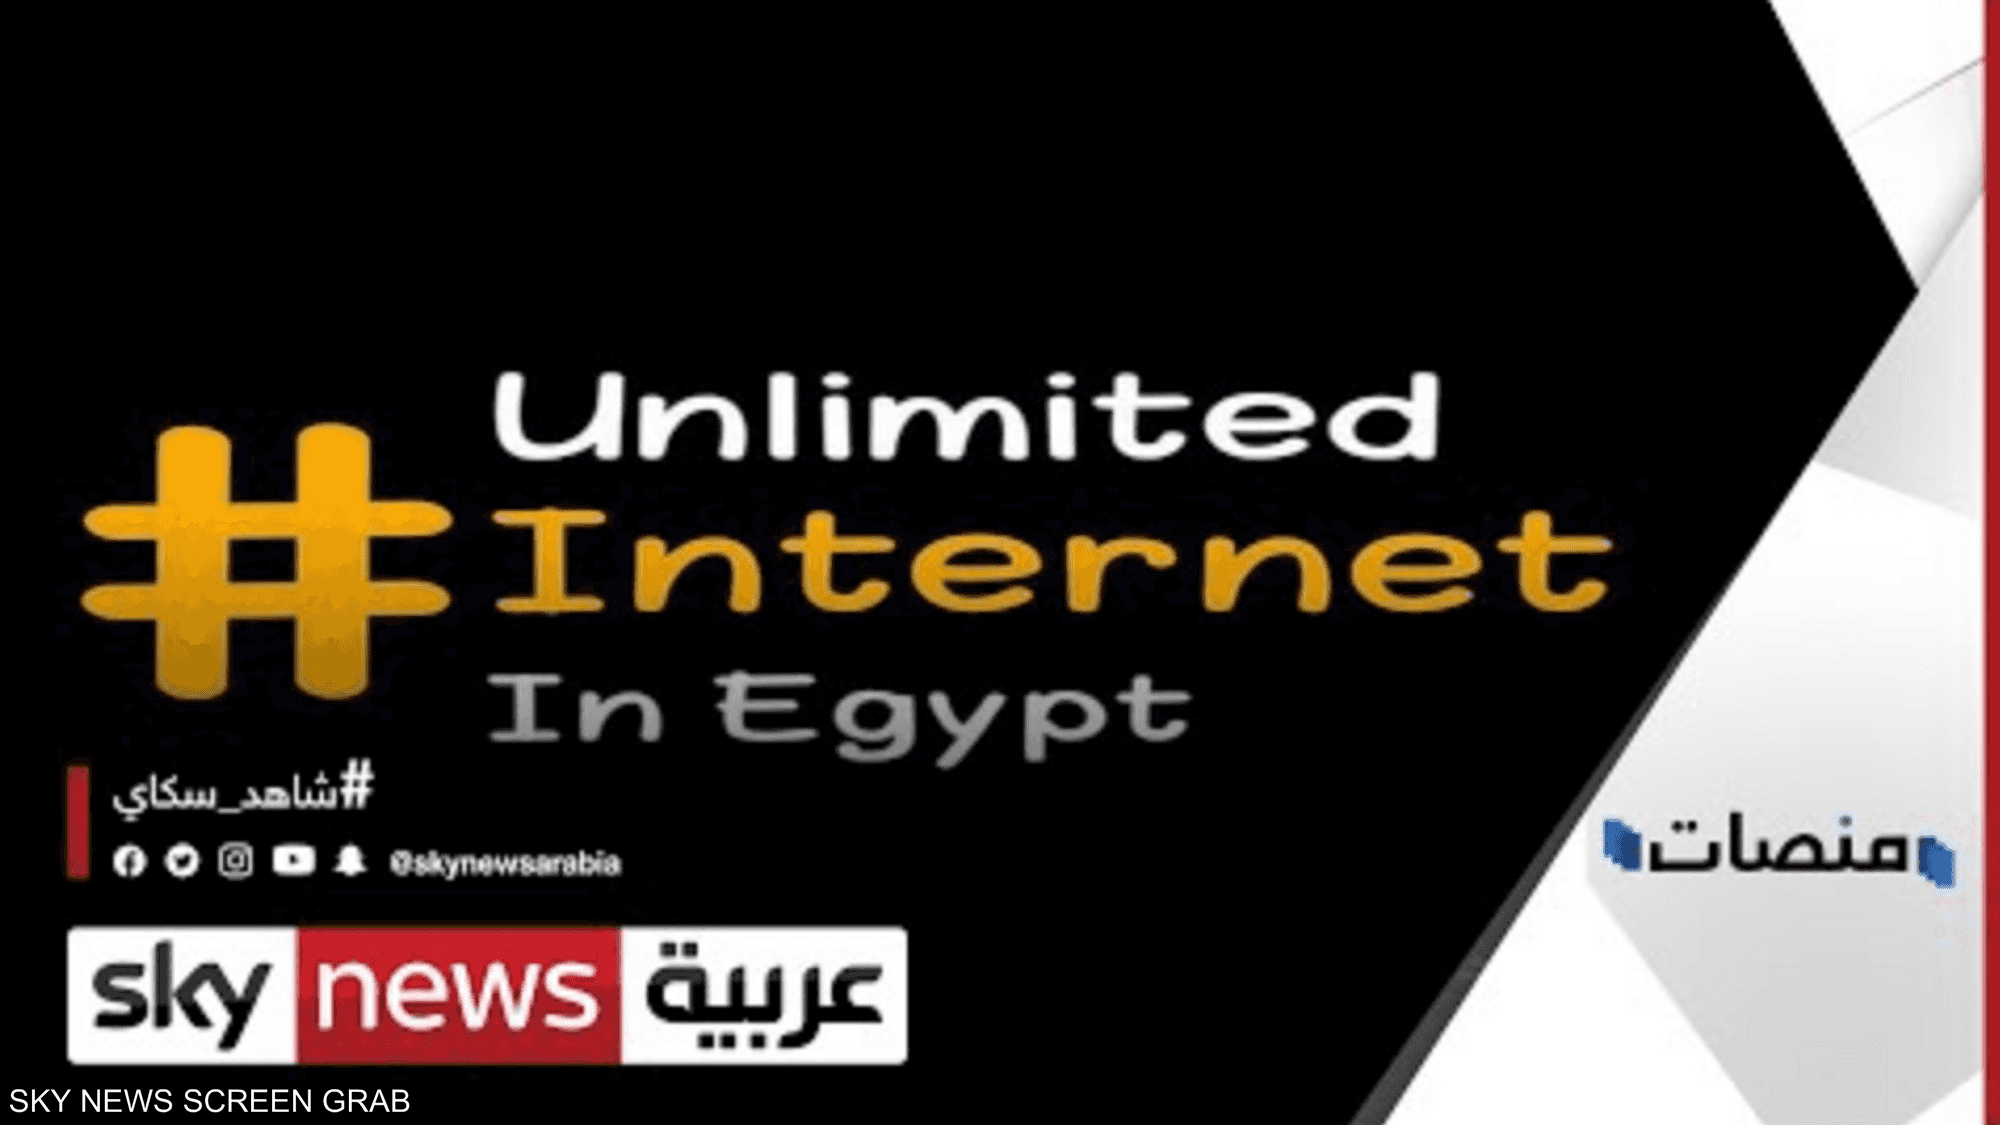 إنترنت غير محدود يقترب من مليون تغريدة في مصر